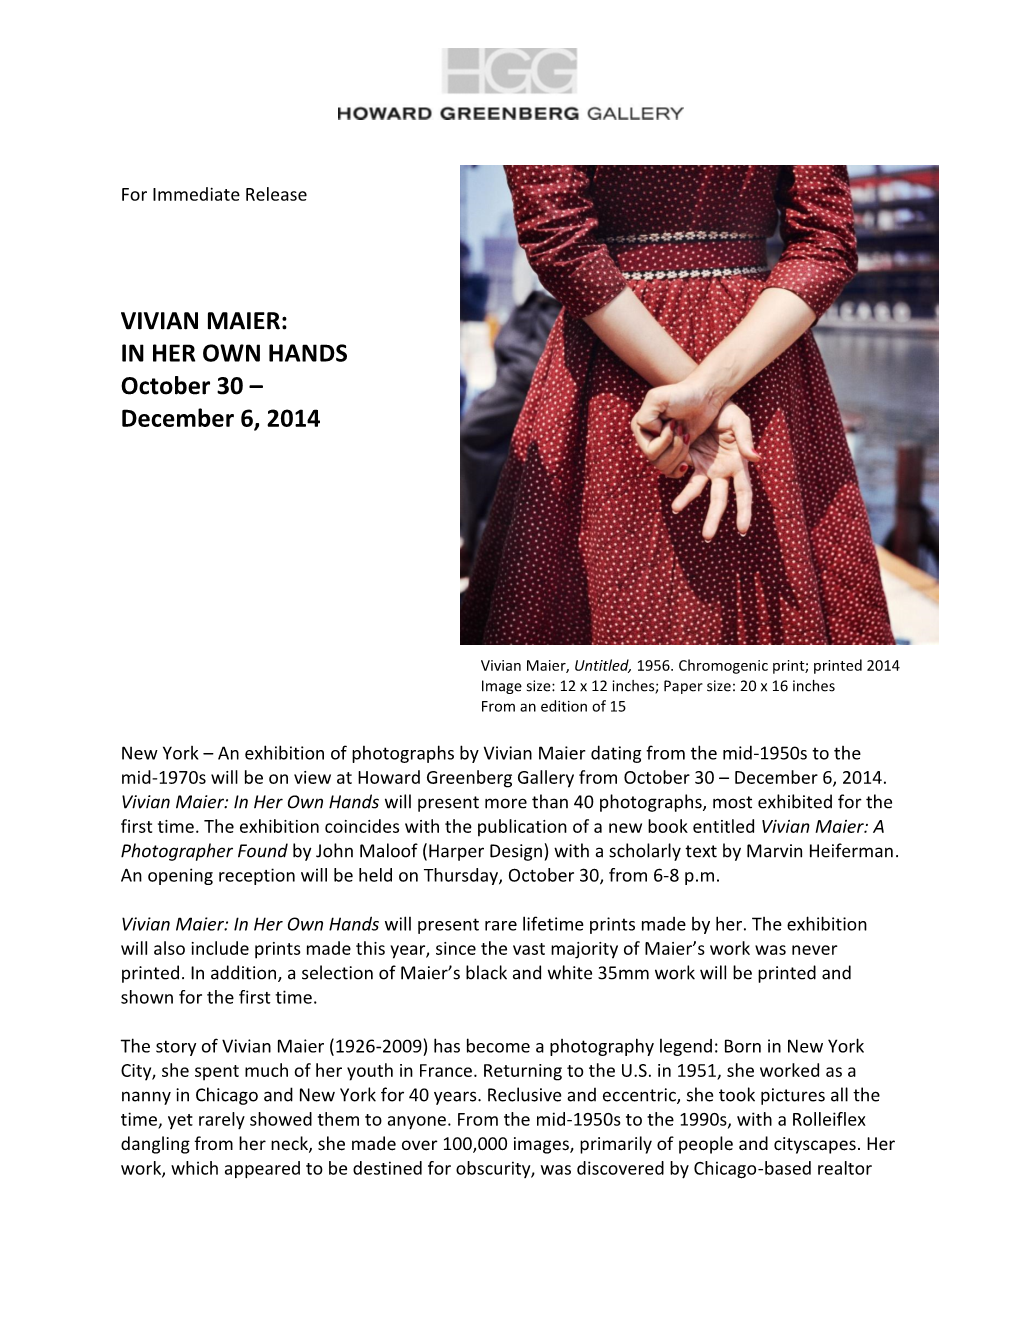 VIVIAN MAIER: in HER OWN HANDS October 30 – December 6, 2014